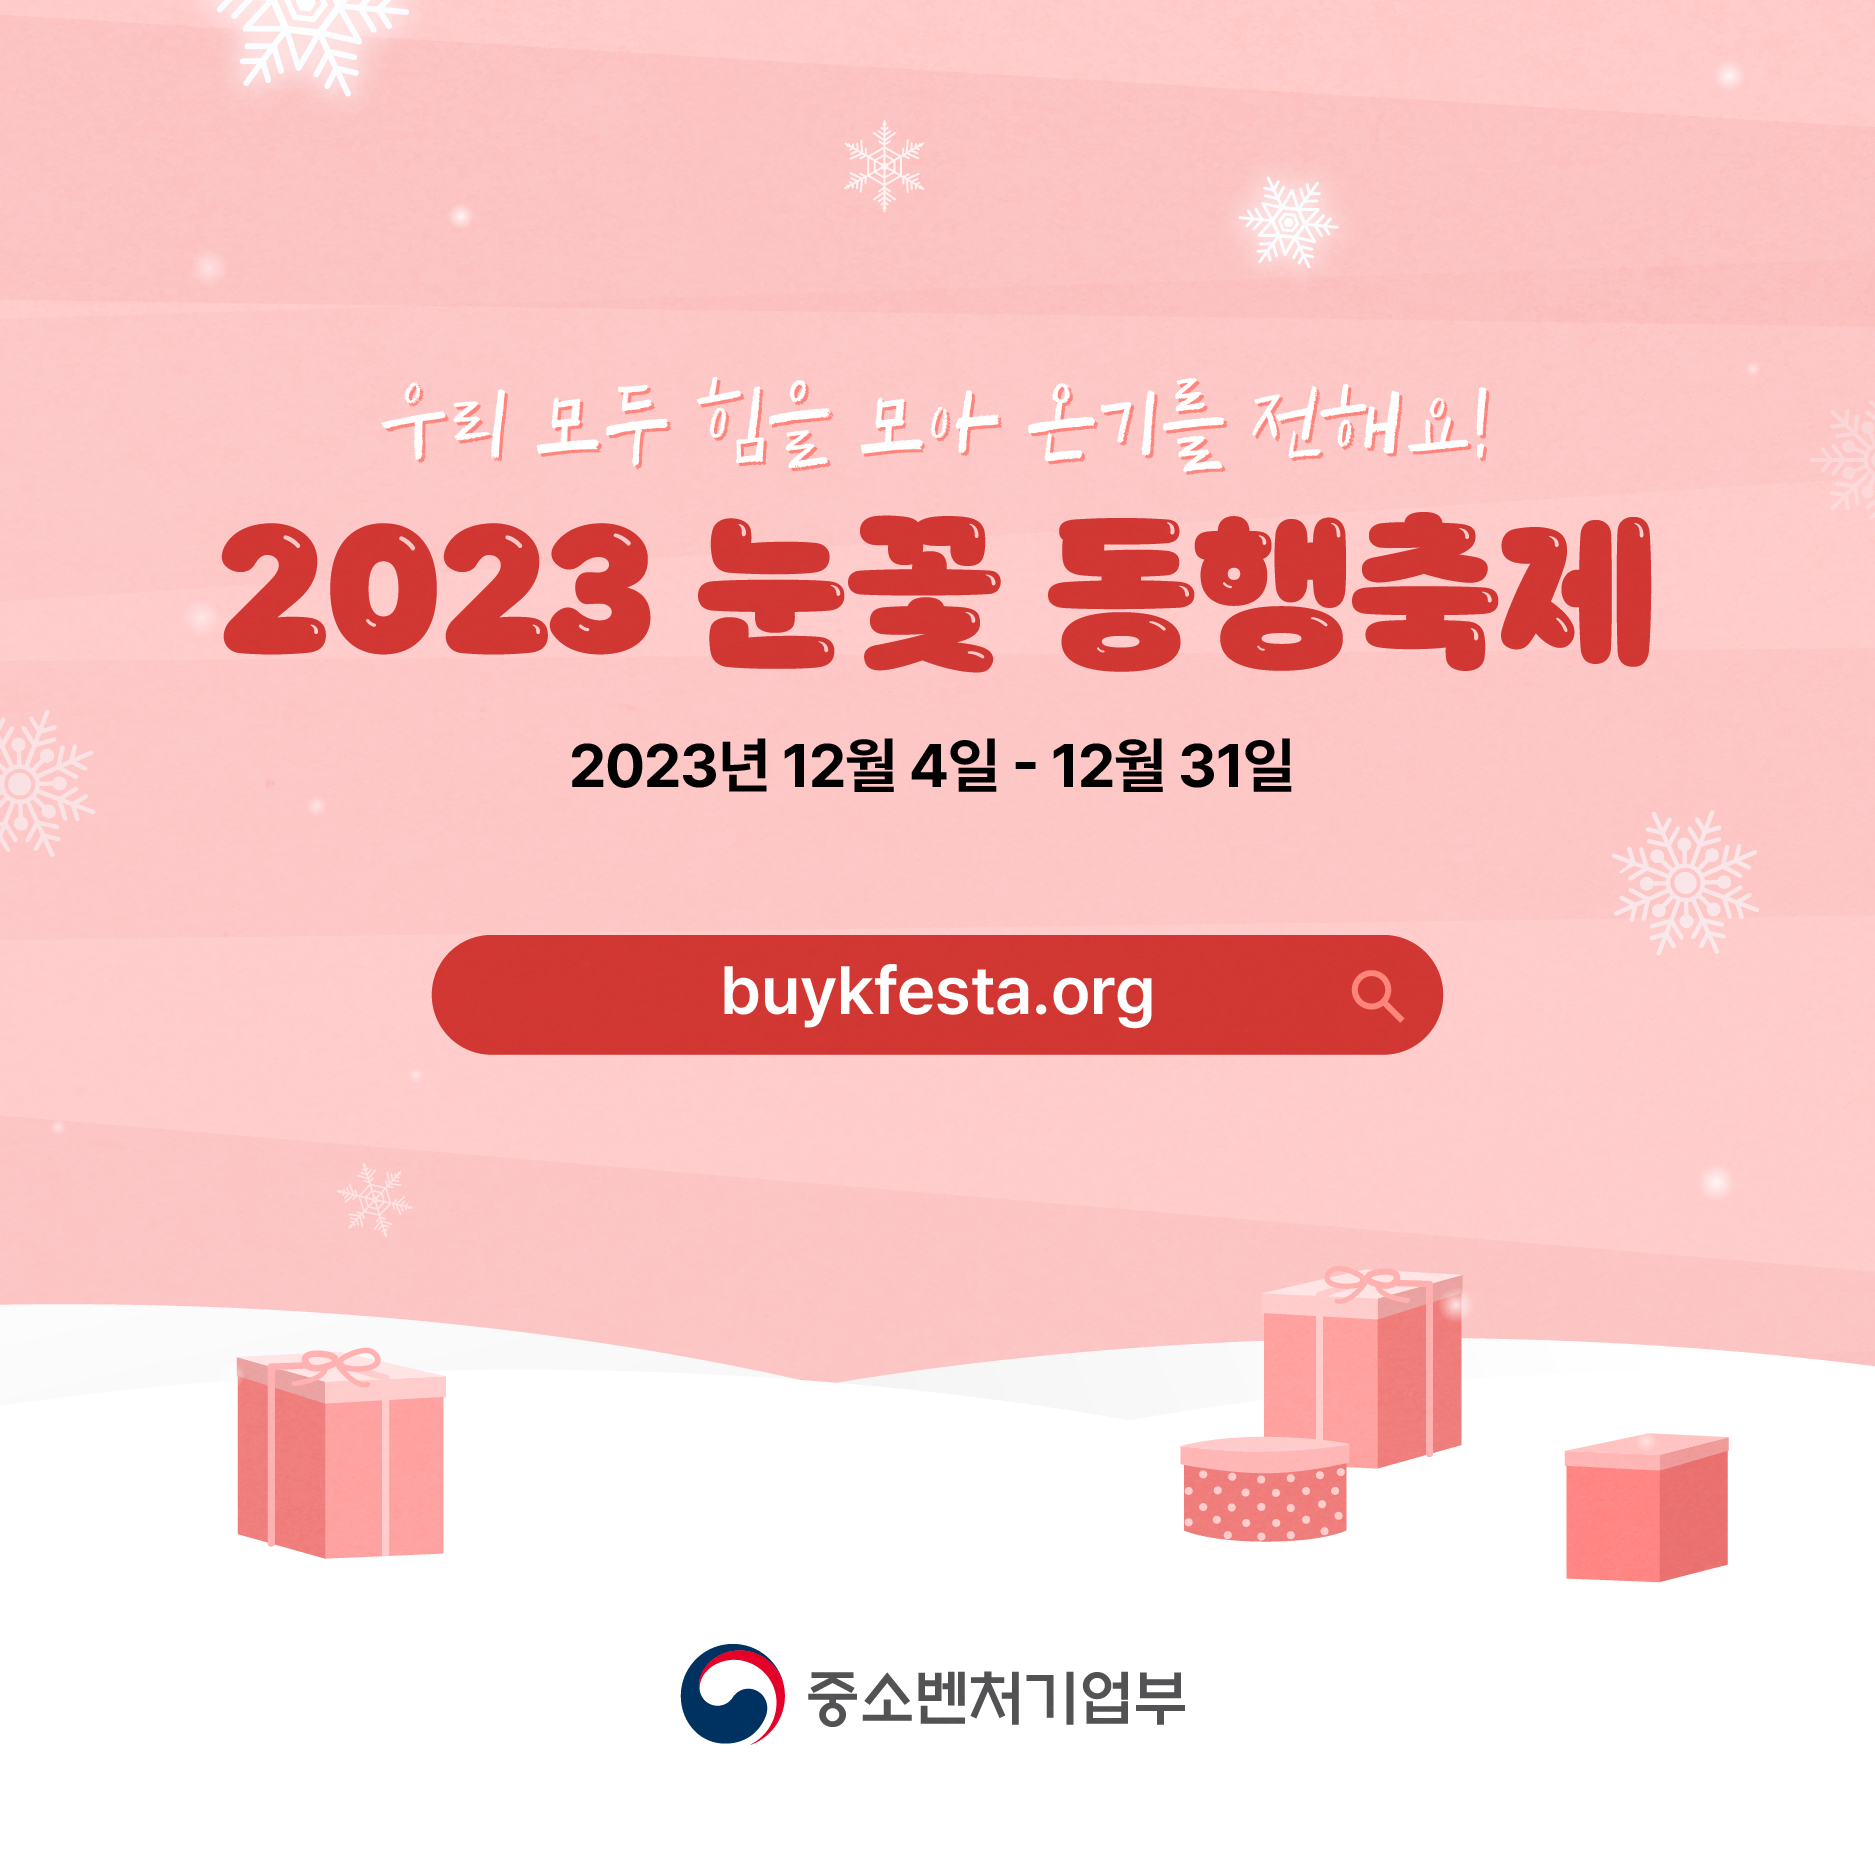 우리 모두 힘을 모아 온기를 전해요!
2023 눈꽃 동행축제 
2023년 12월 4일 - 12월 31일 
buykfesta.org
중소벤처기업부(로고)